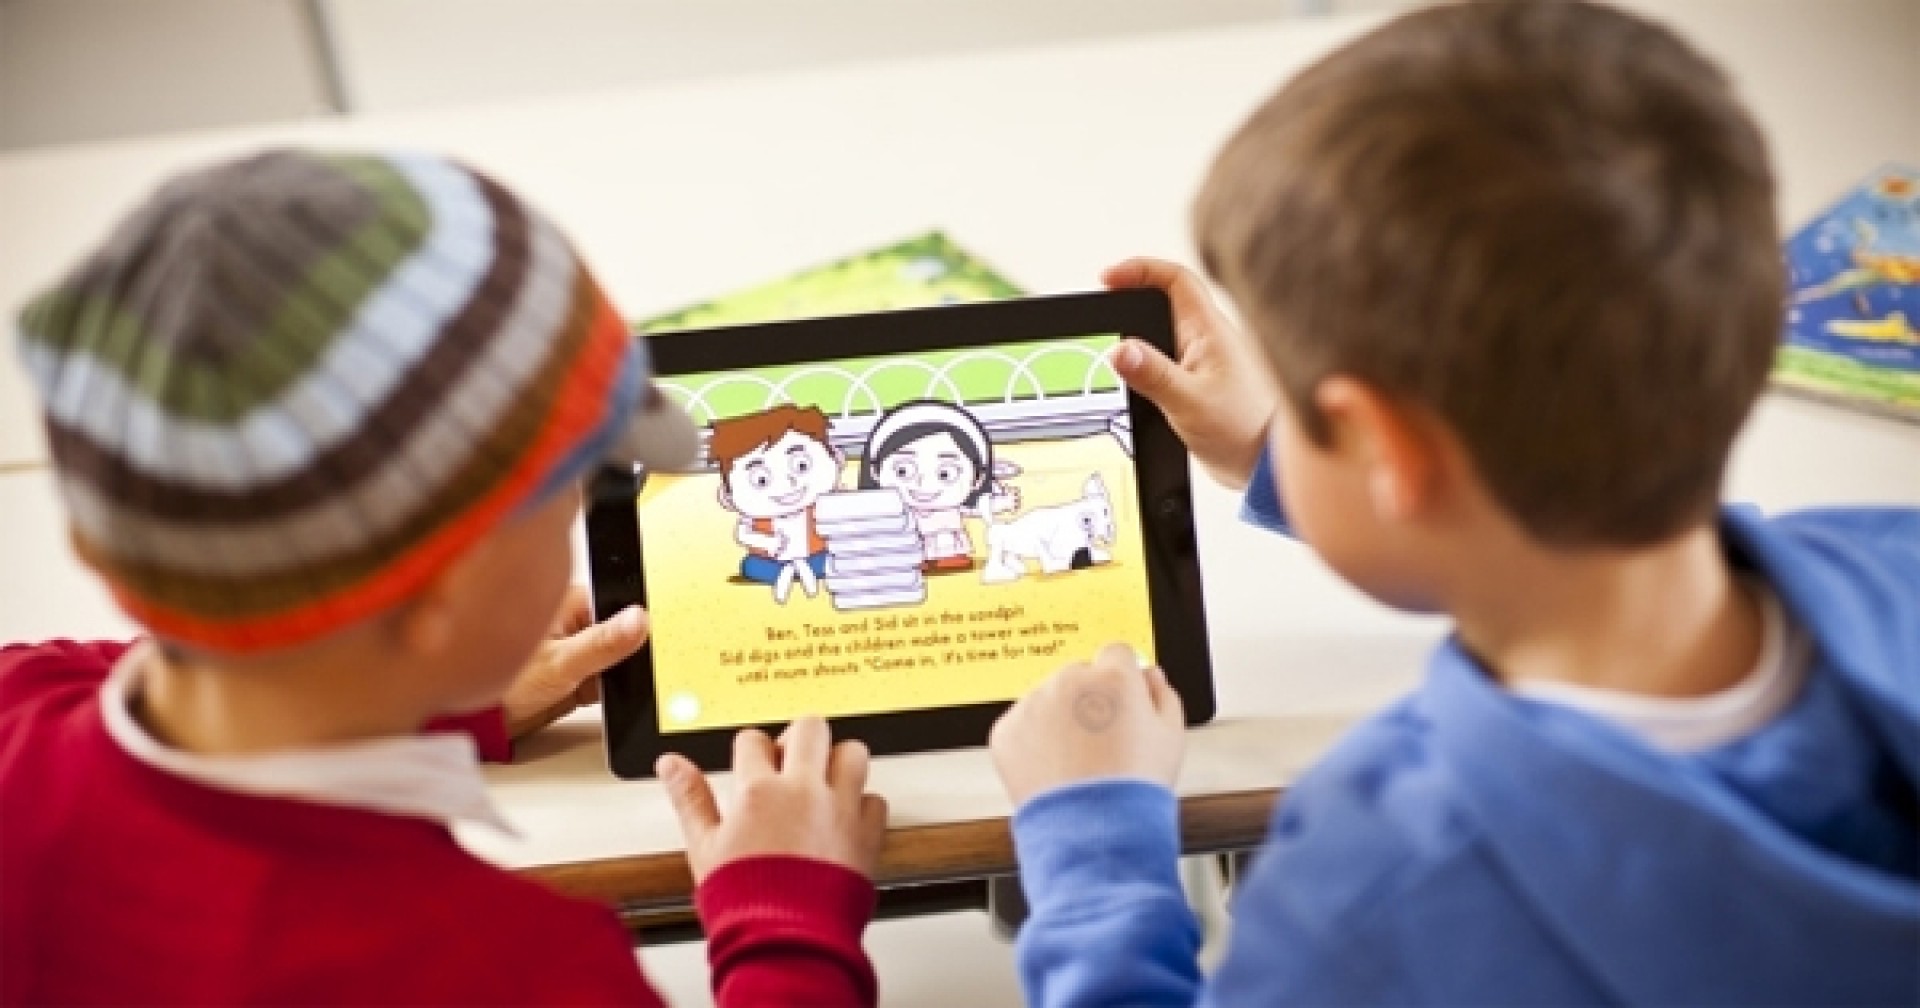 Tin vui cho ba mẹ: video dạy tiếng Anh cho trẻ em miễn phí!